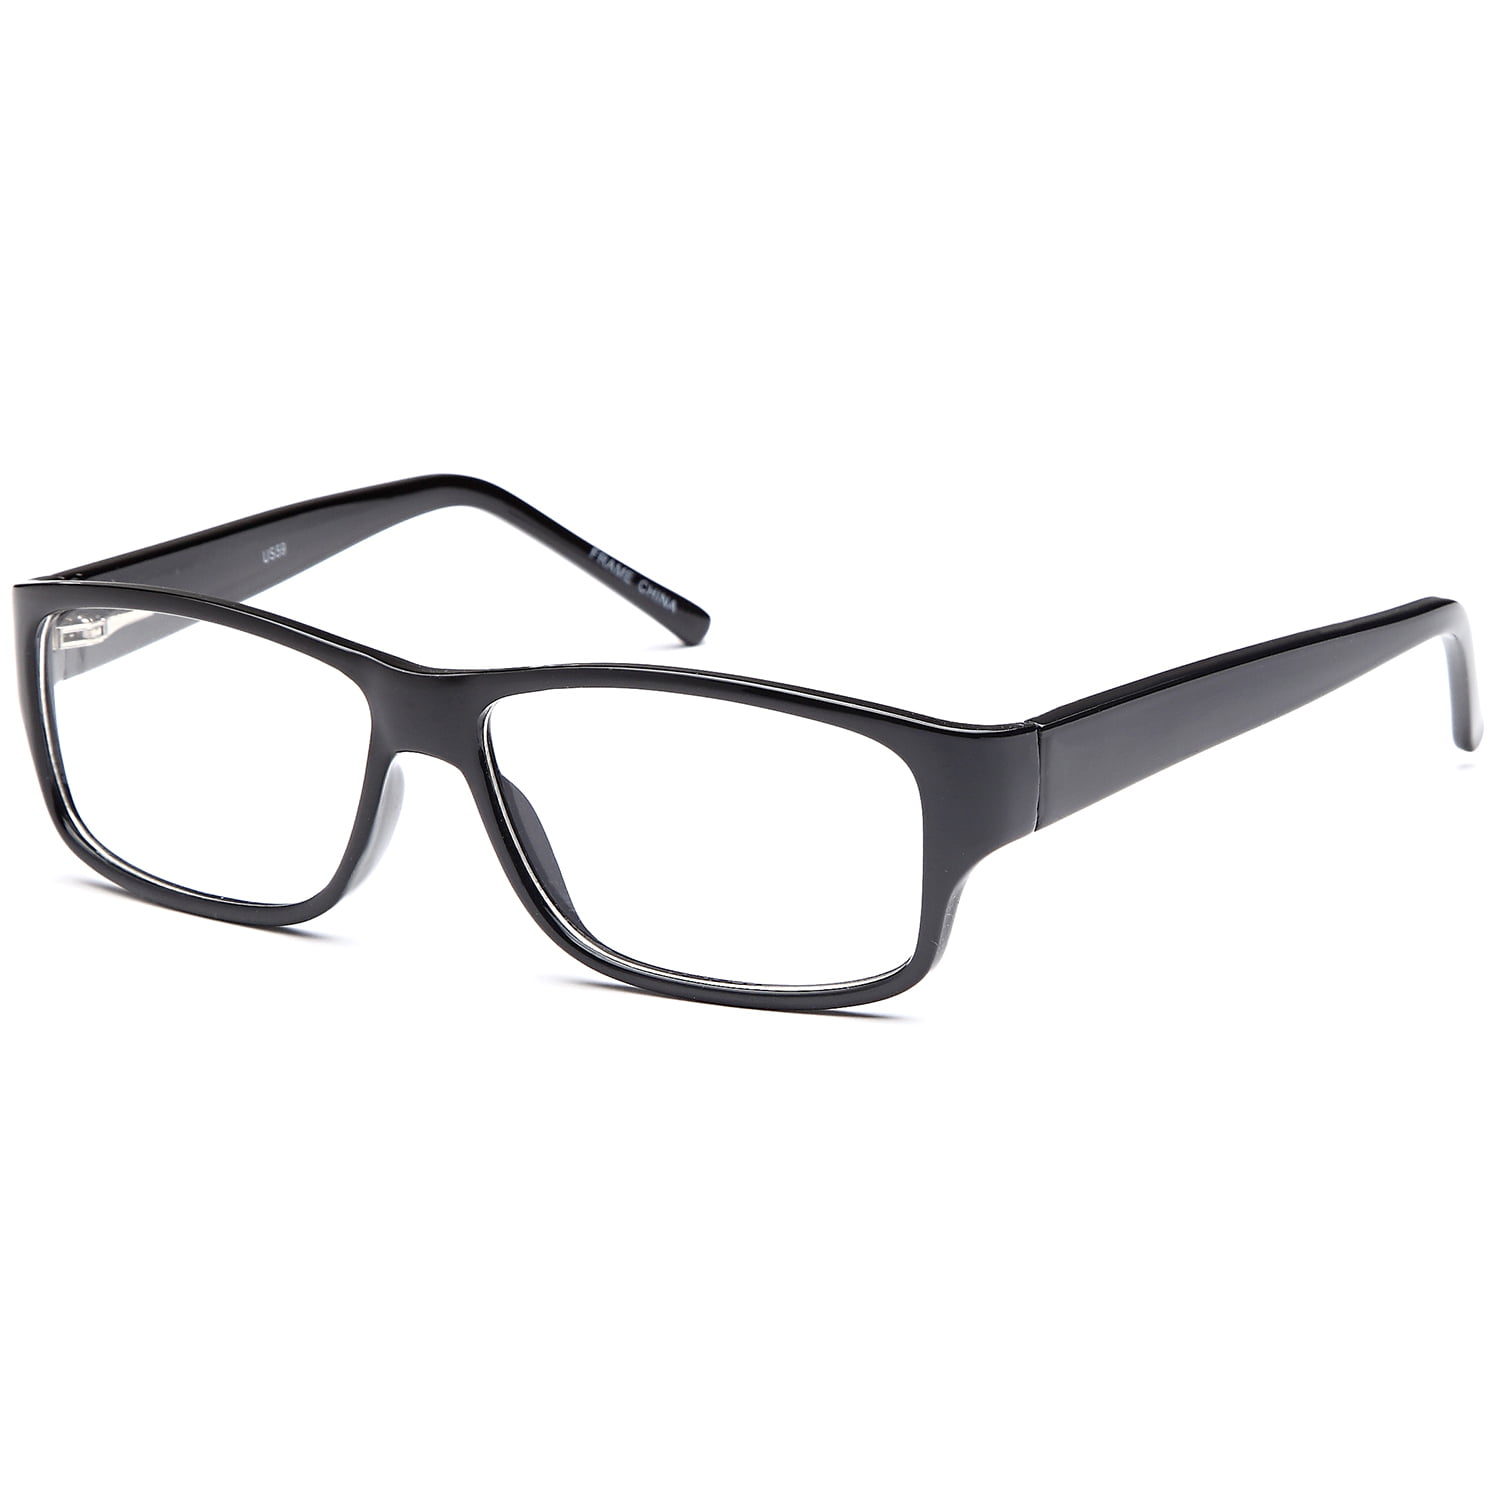 Men S Eyeglasses 56 16 140 Black Plastic